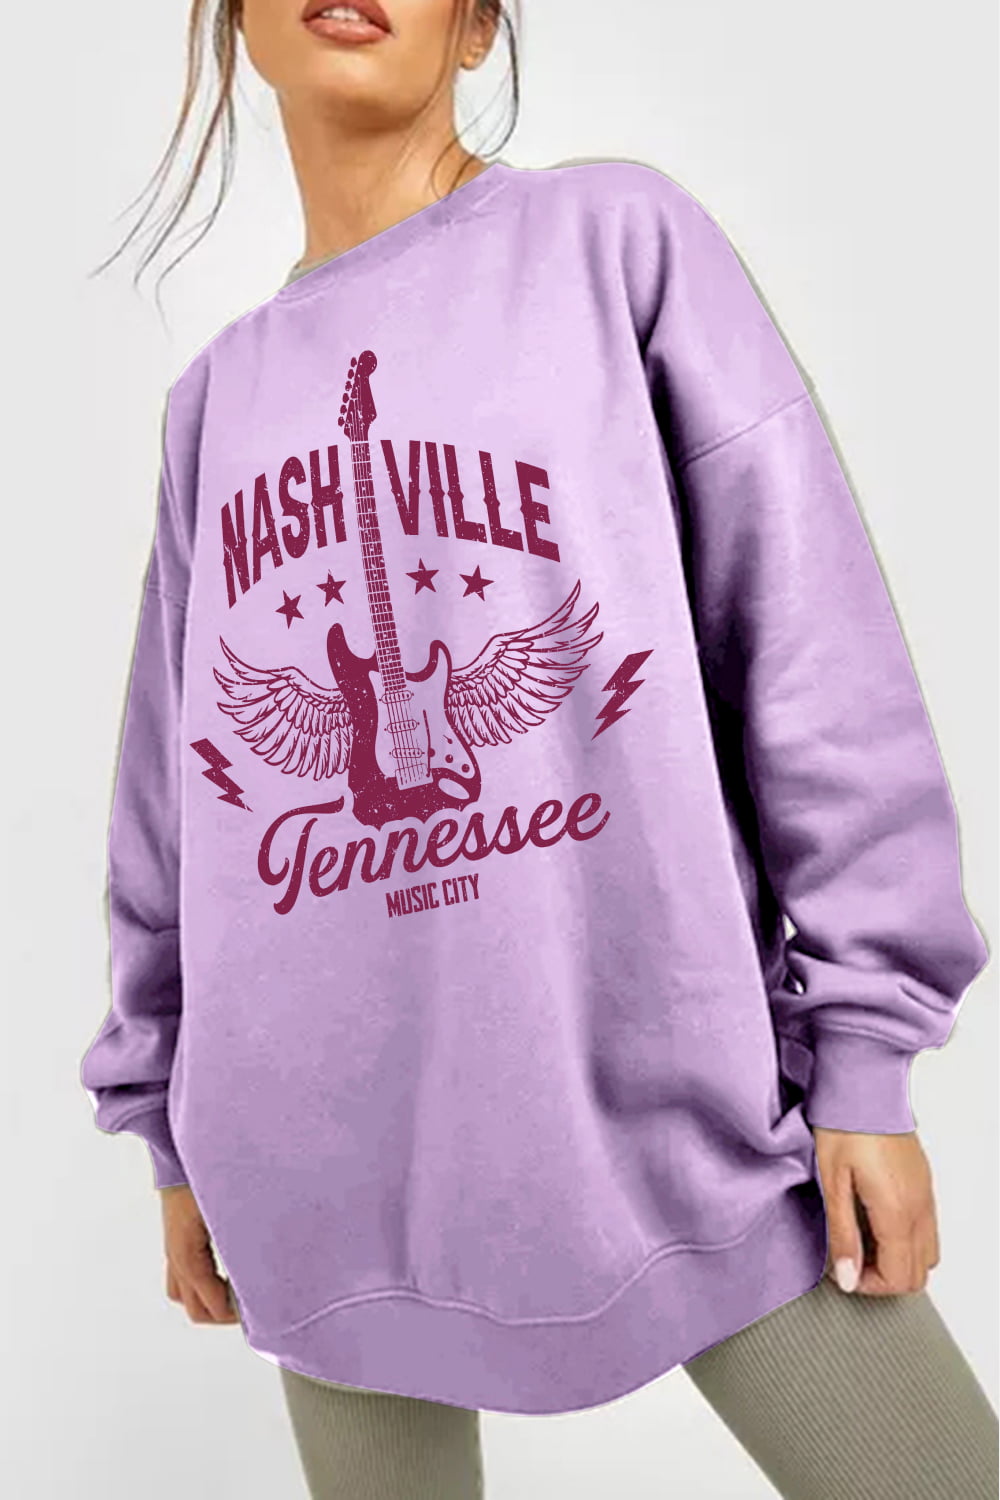 NASHVILLE TENNESSEE MUSIC CITY Sweatshirt | AdoreStarr